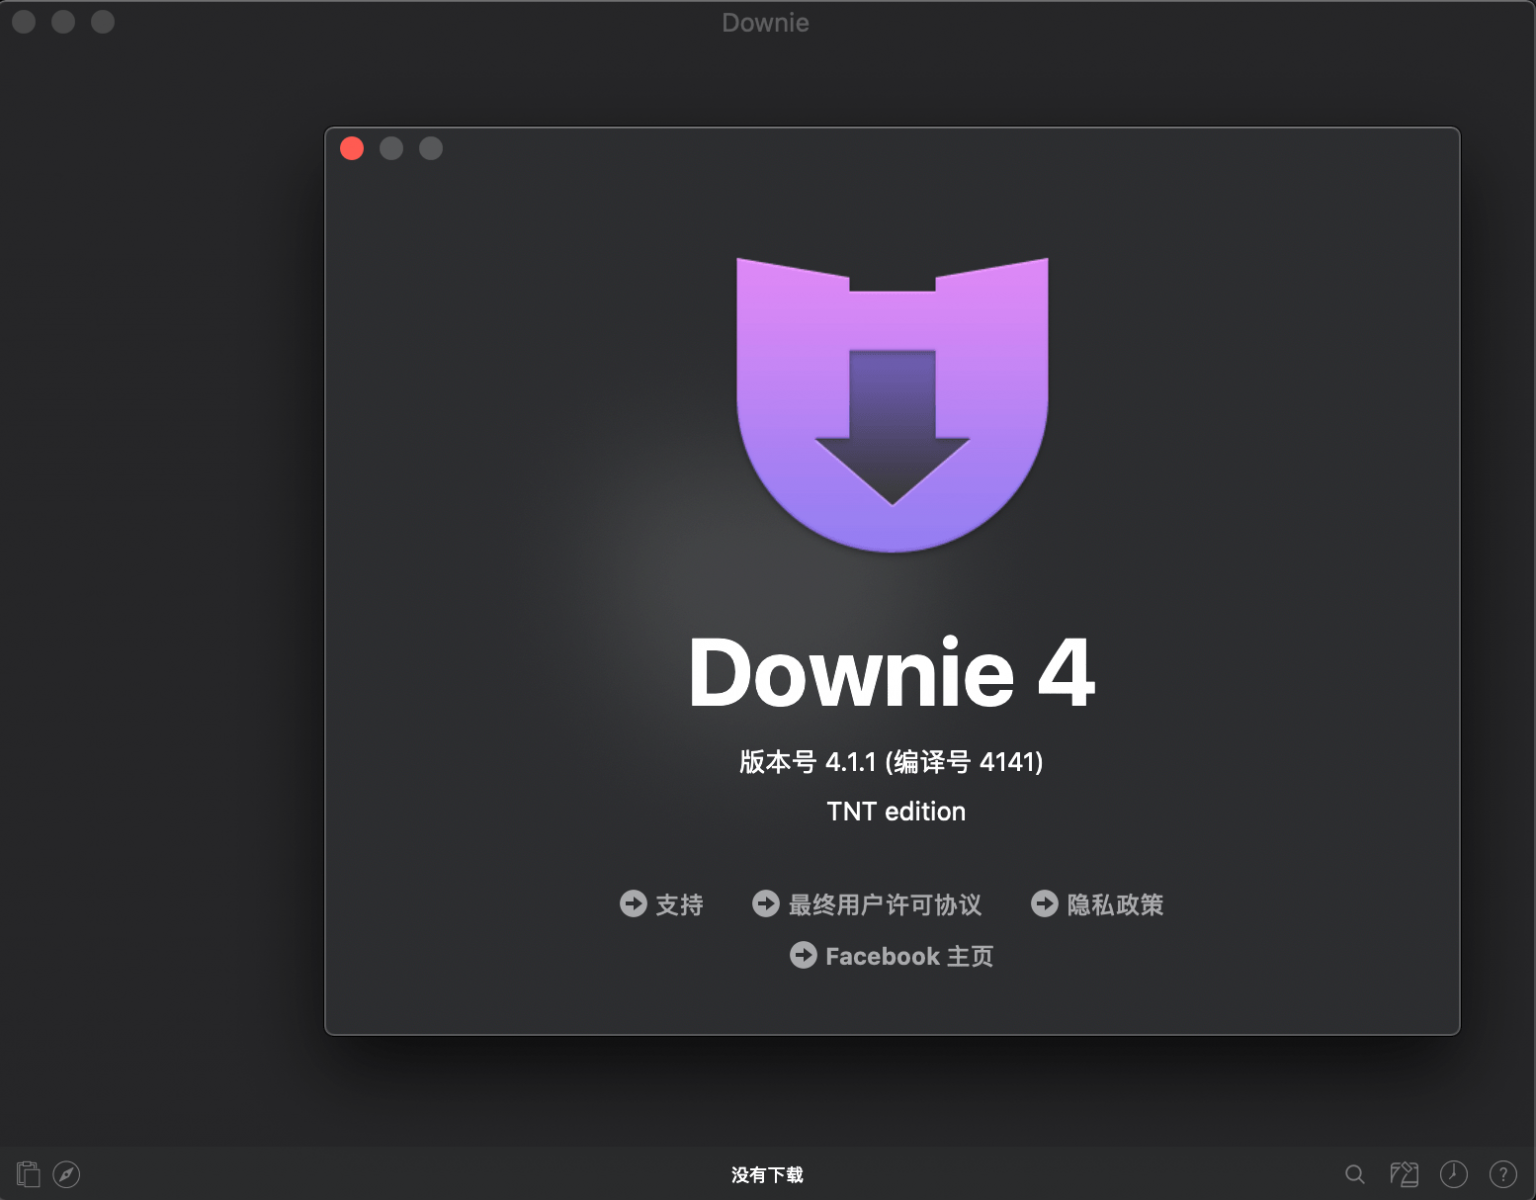 Downie 4 instal the new